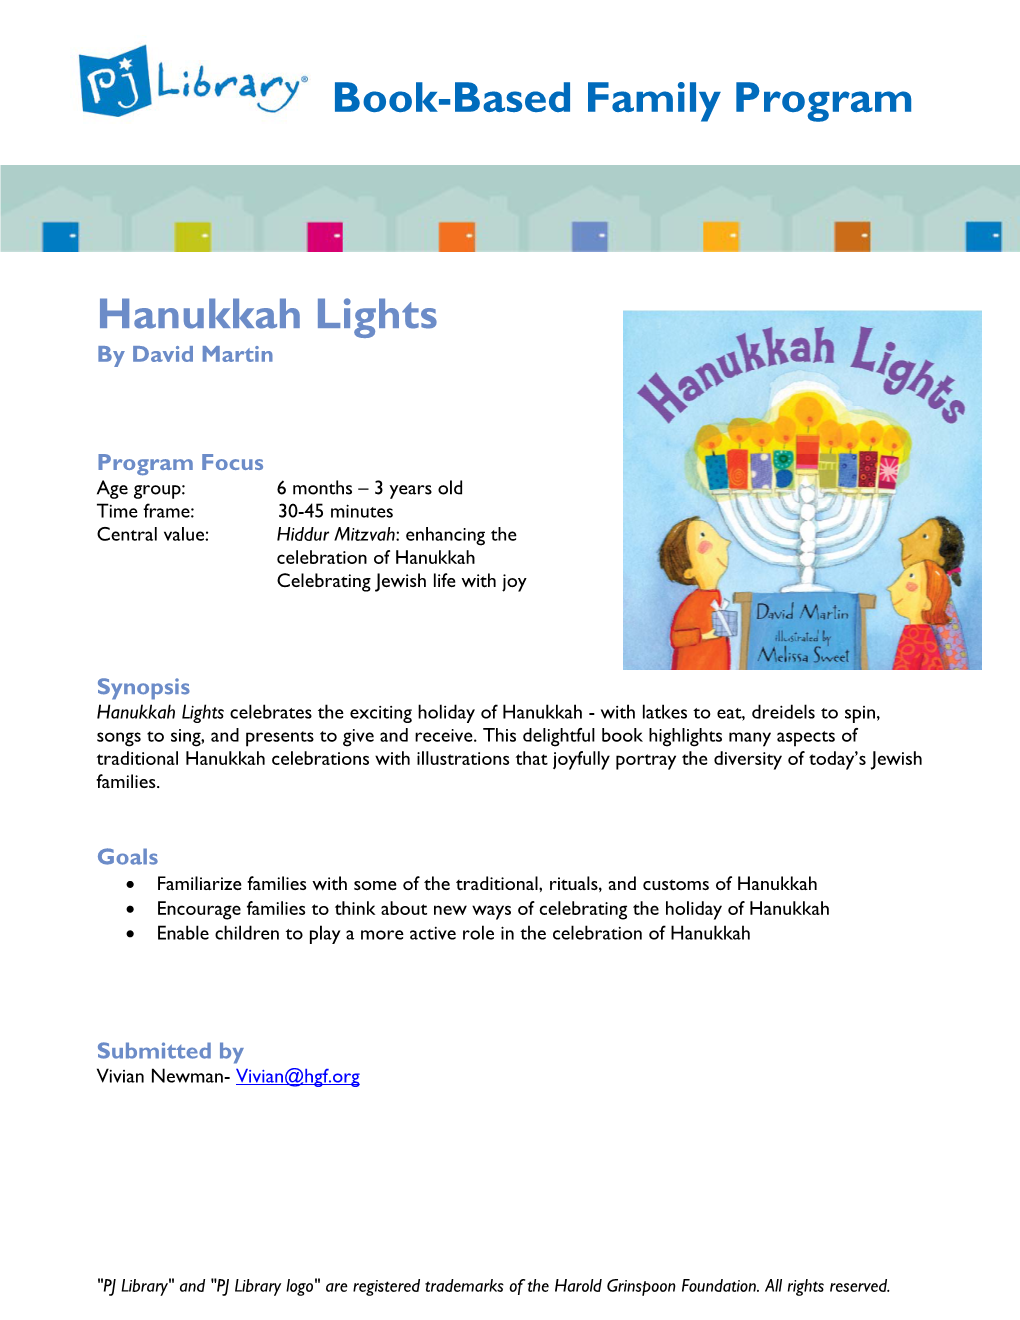 Hanukkah Lights by David Martin